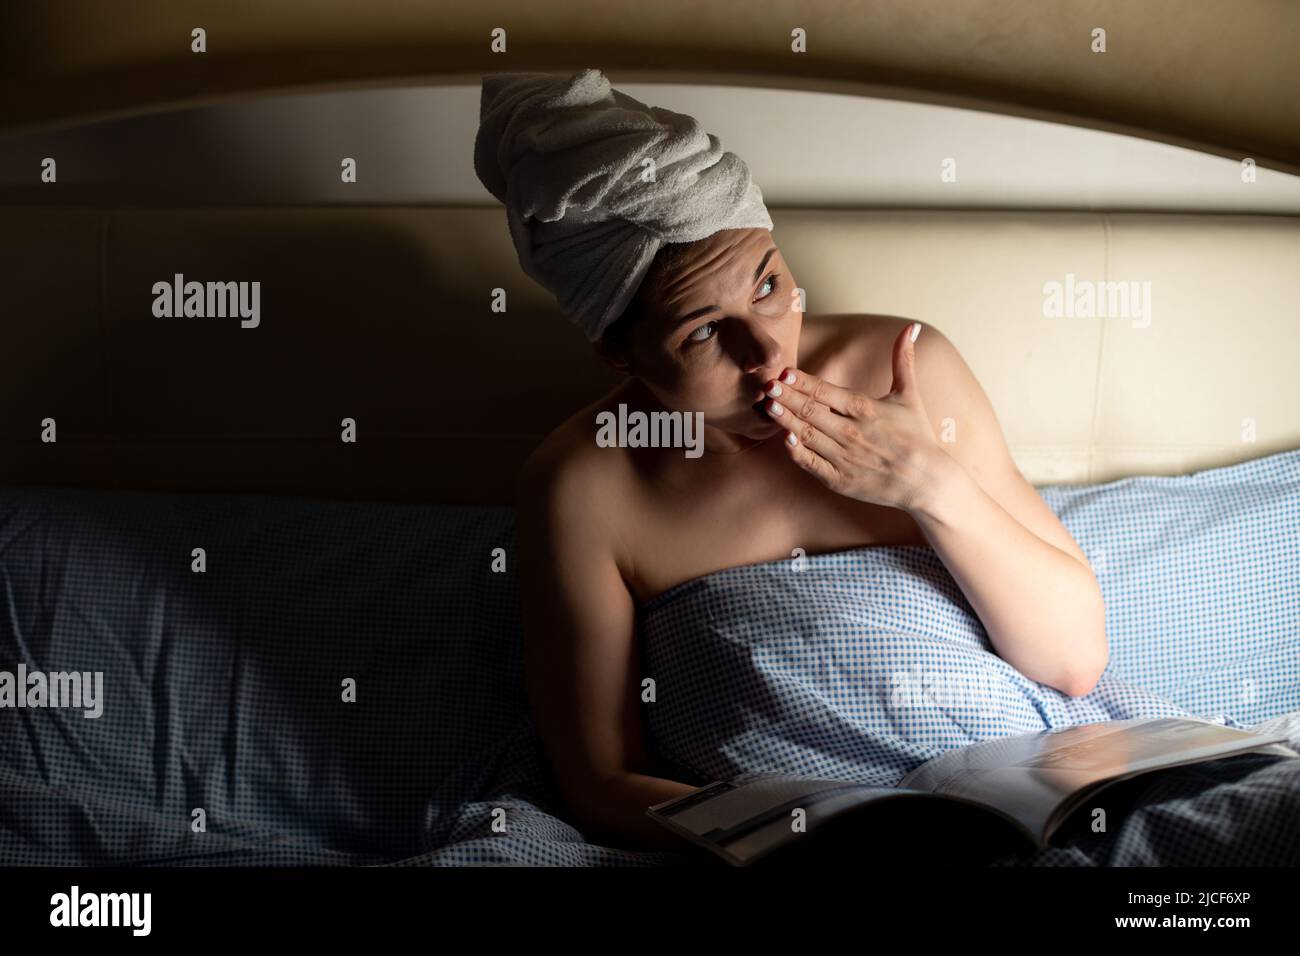 Porträt einer jungen, ängstlich verängstigten Frau, die auf dem Bett liegt, bedeckt mit einer blauen Decke, zur Seite schaut und den Mund mit der Hand bedeckt. Stockfoto